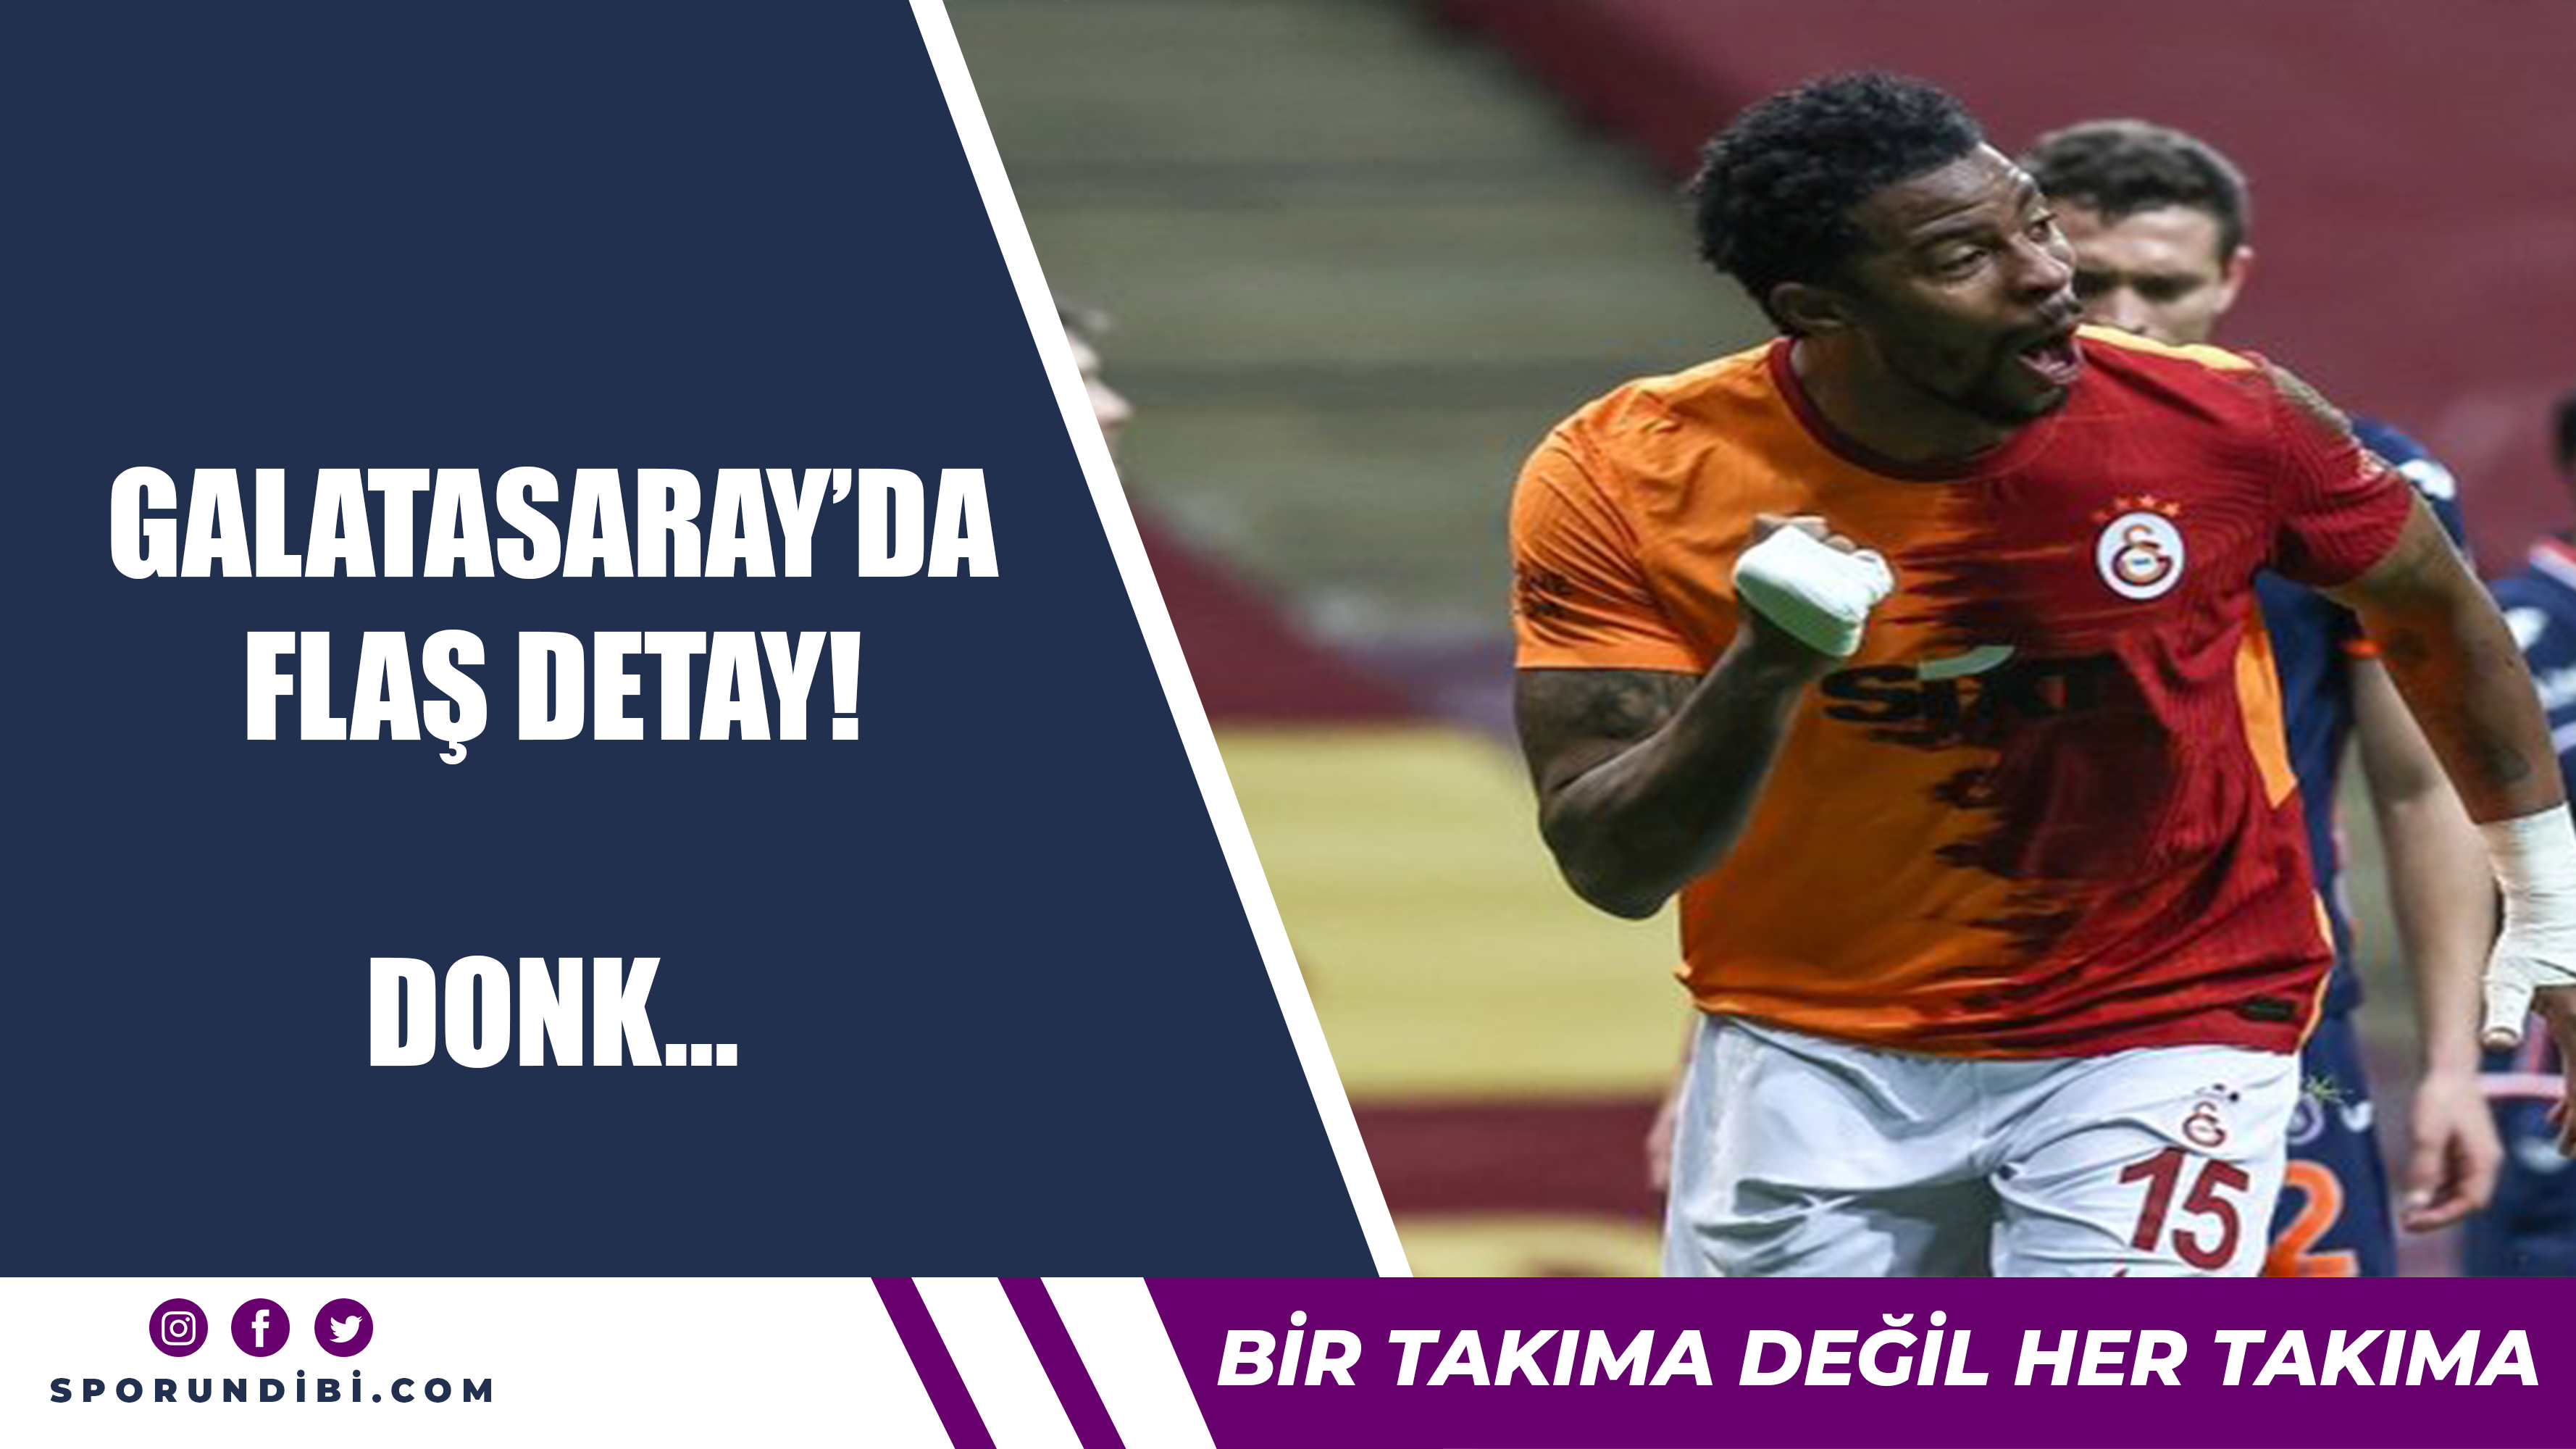 Galatasaray'da flaş detay! Donk...